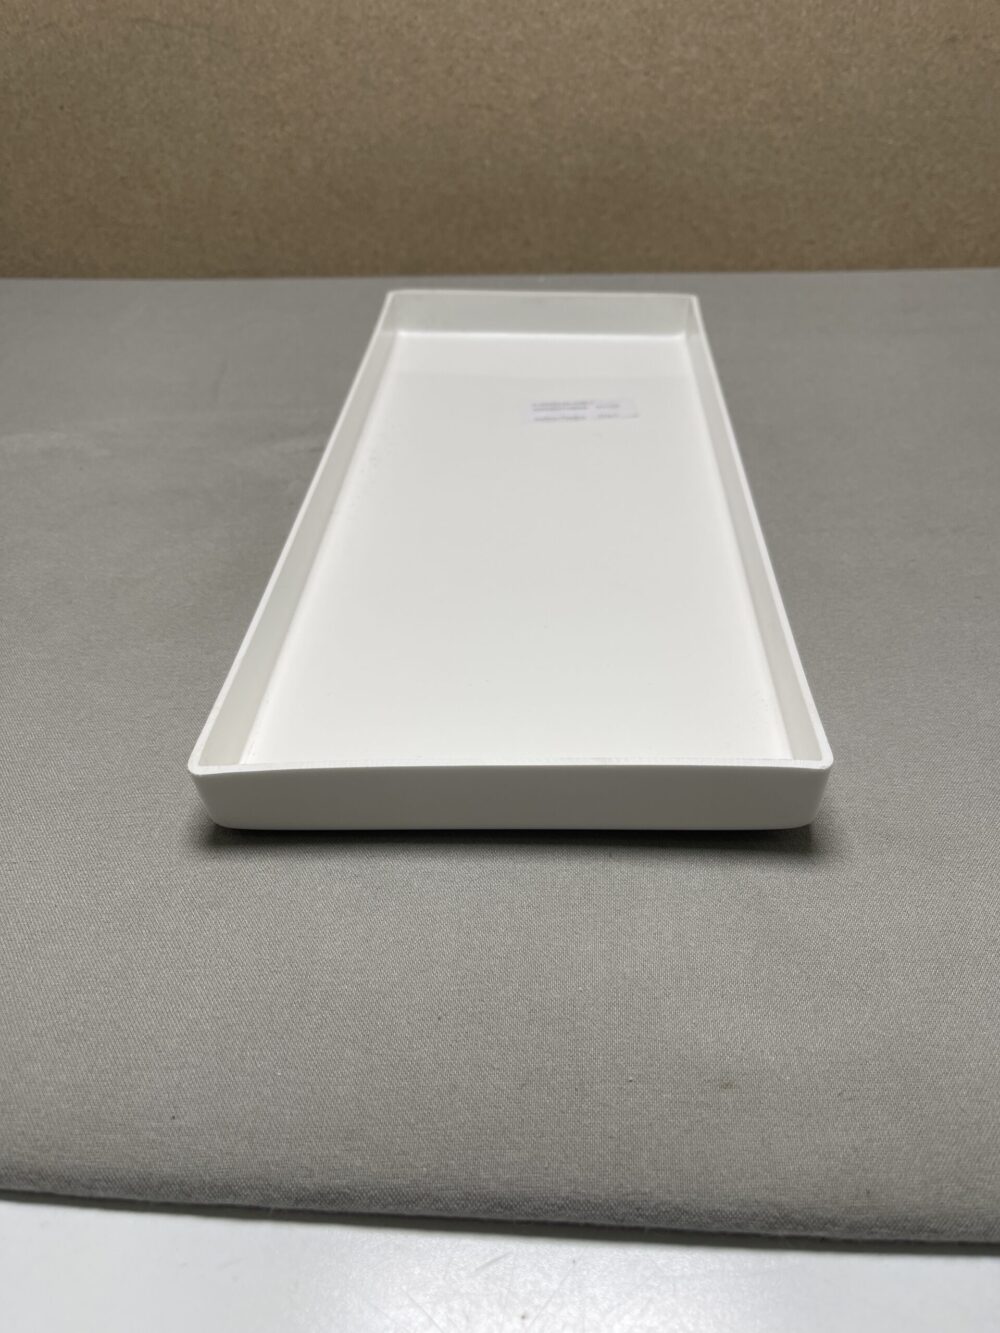 Plastikschale weiß (Galleno Plastica) 15,5 x 35,5 cm